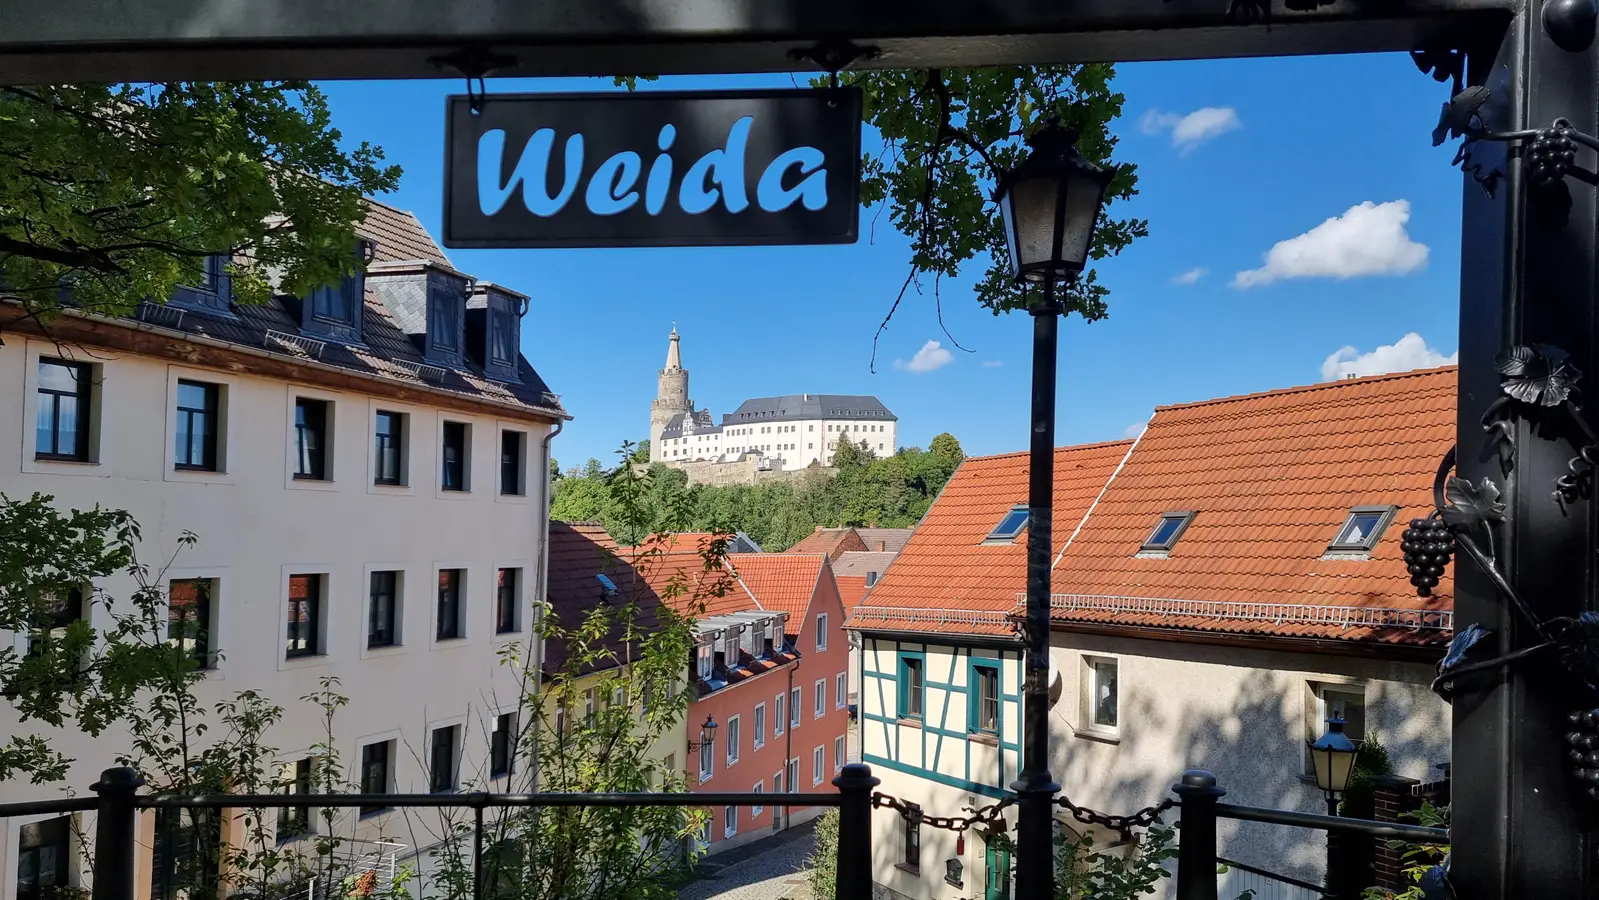 Älteste Stadt im Vogtland ist Weida, sie gehört zu den schönsten Städten im Vogtland. 
Sehenswerte Städte im Vogtland